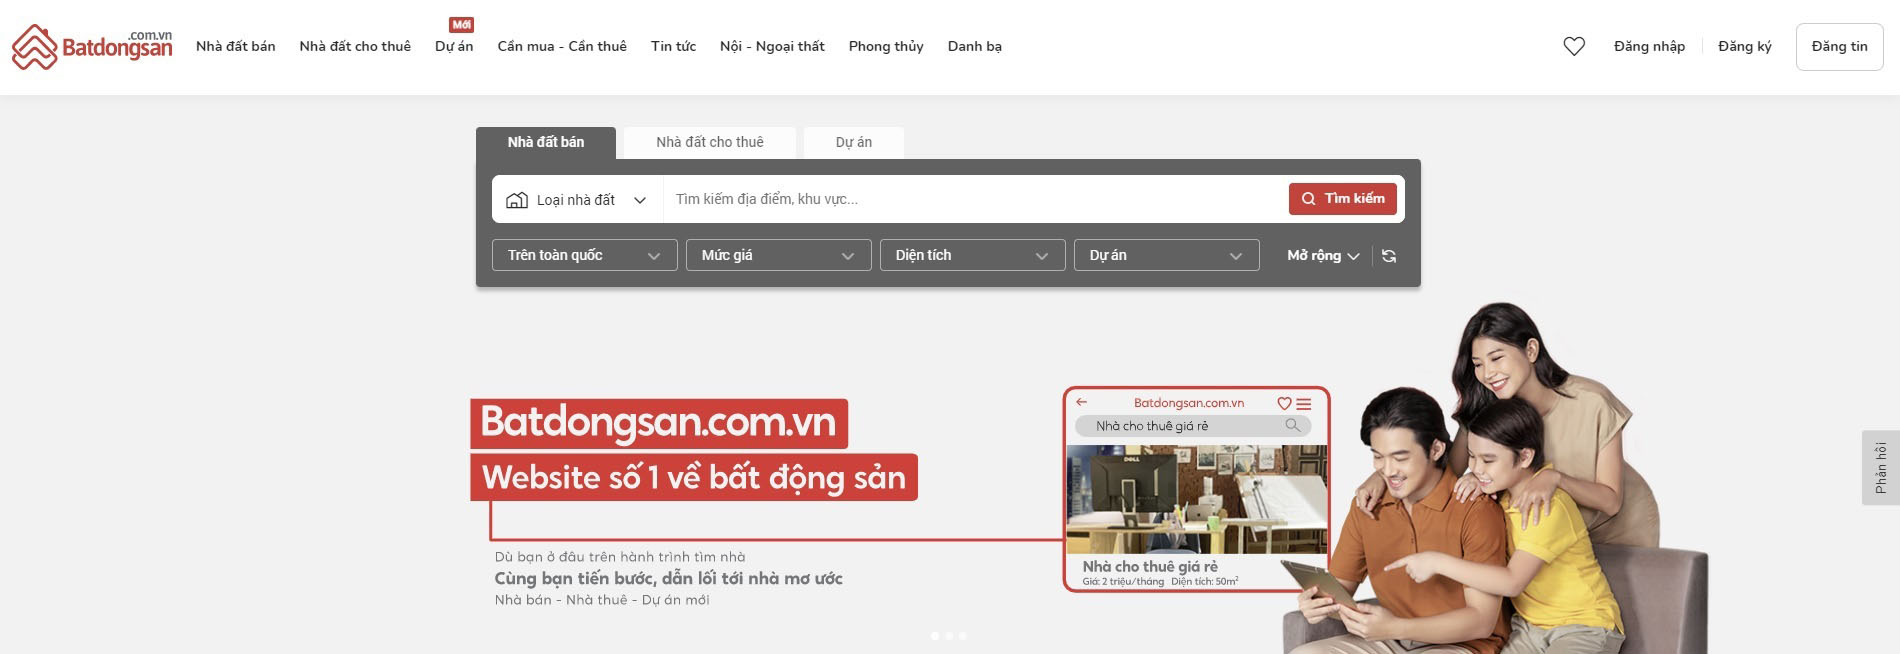 Website đăng tin batdonsan.com.vn